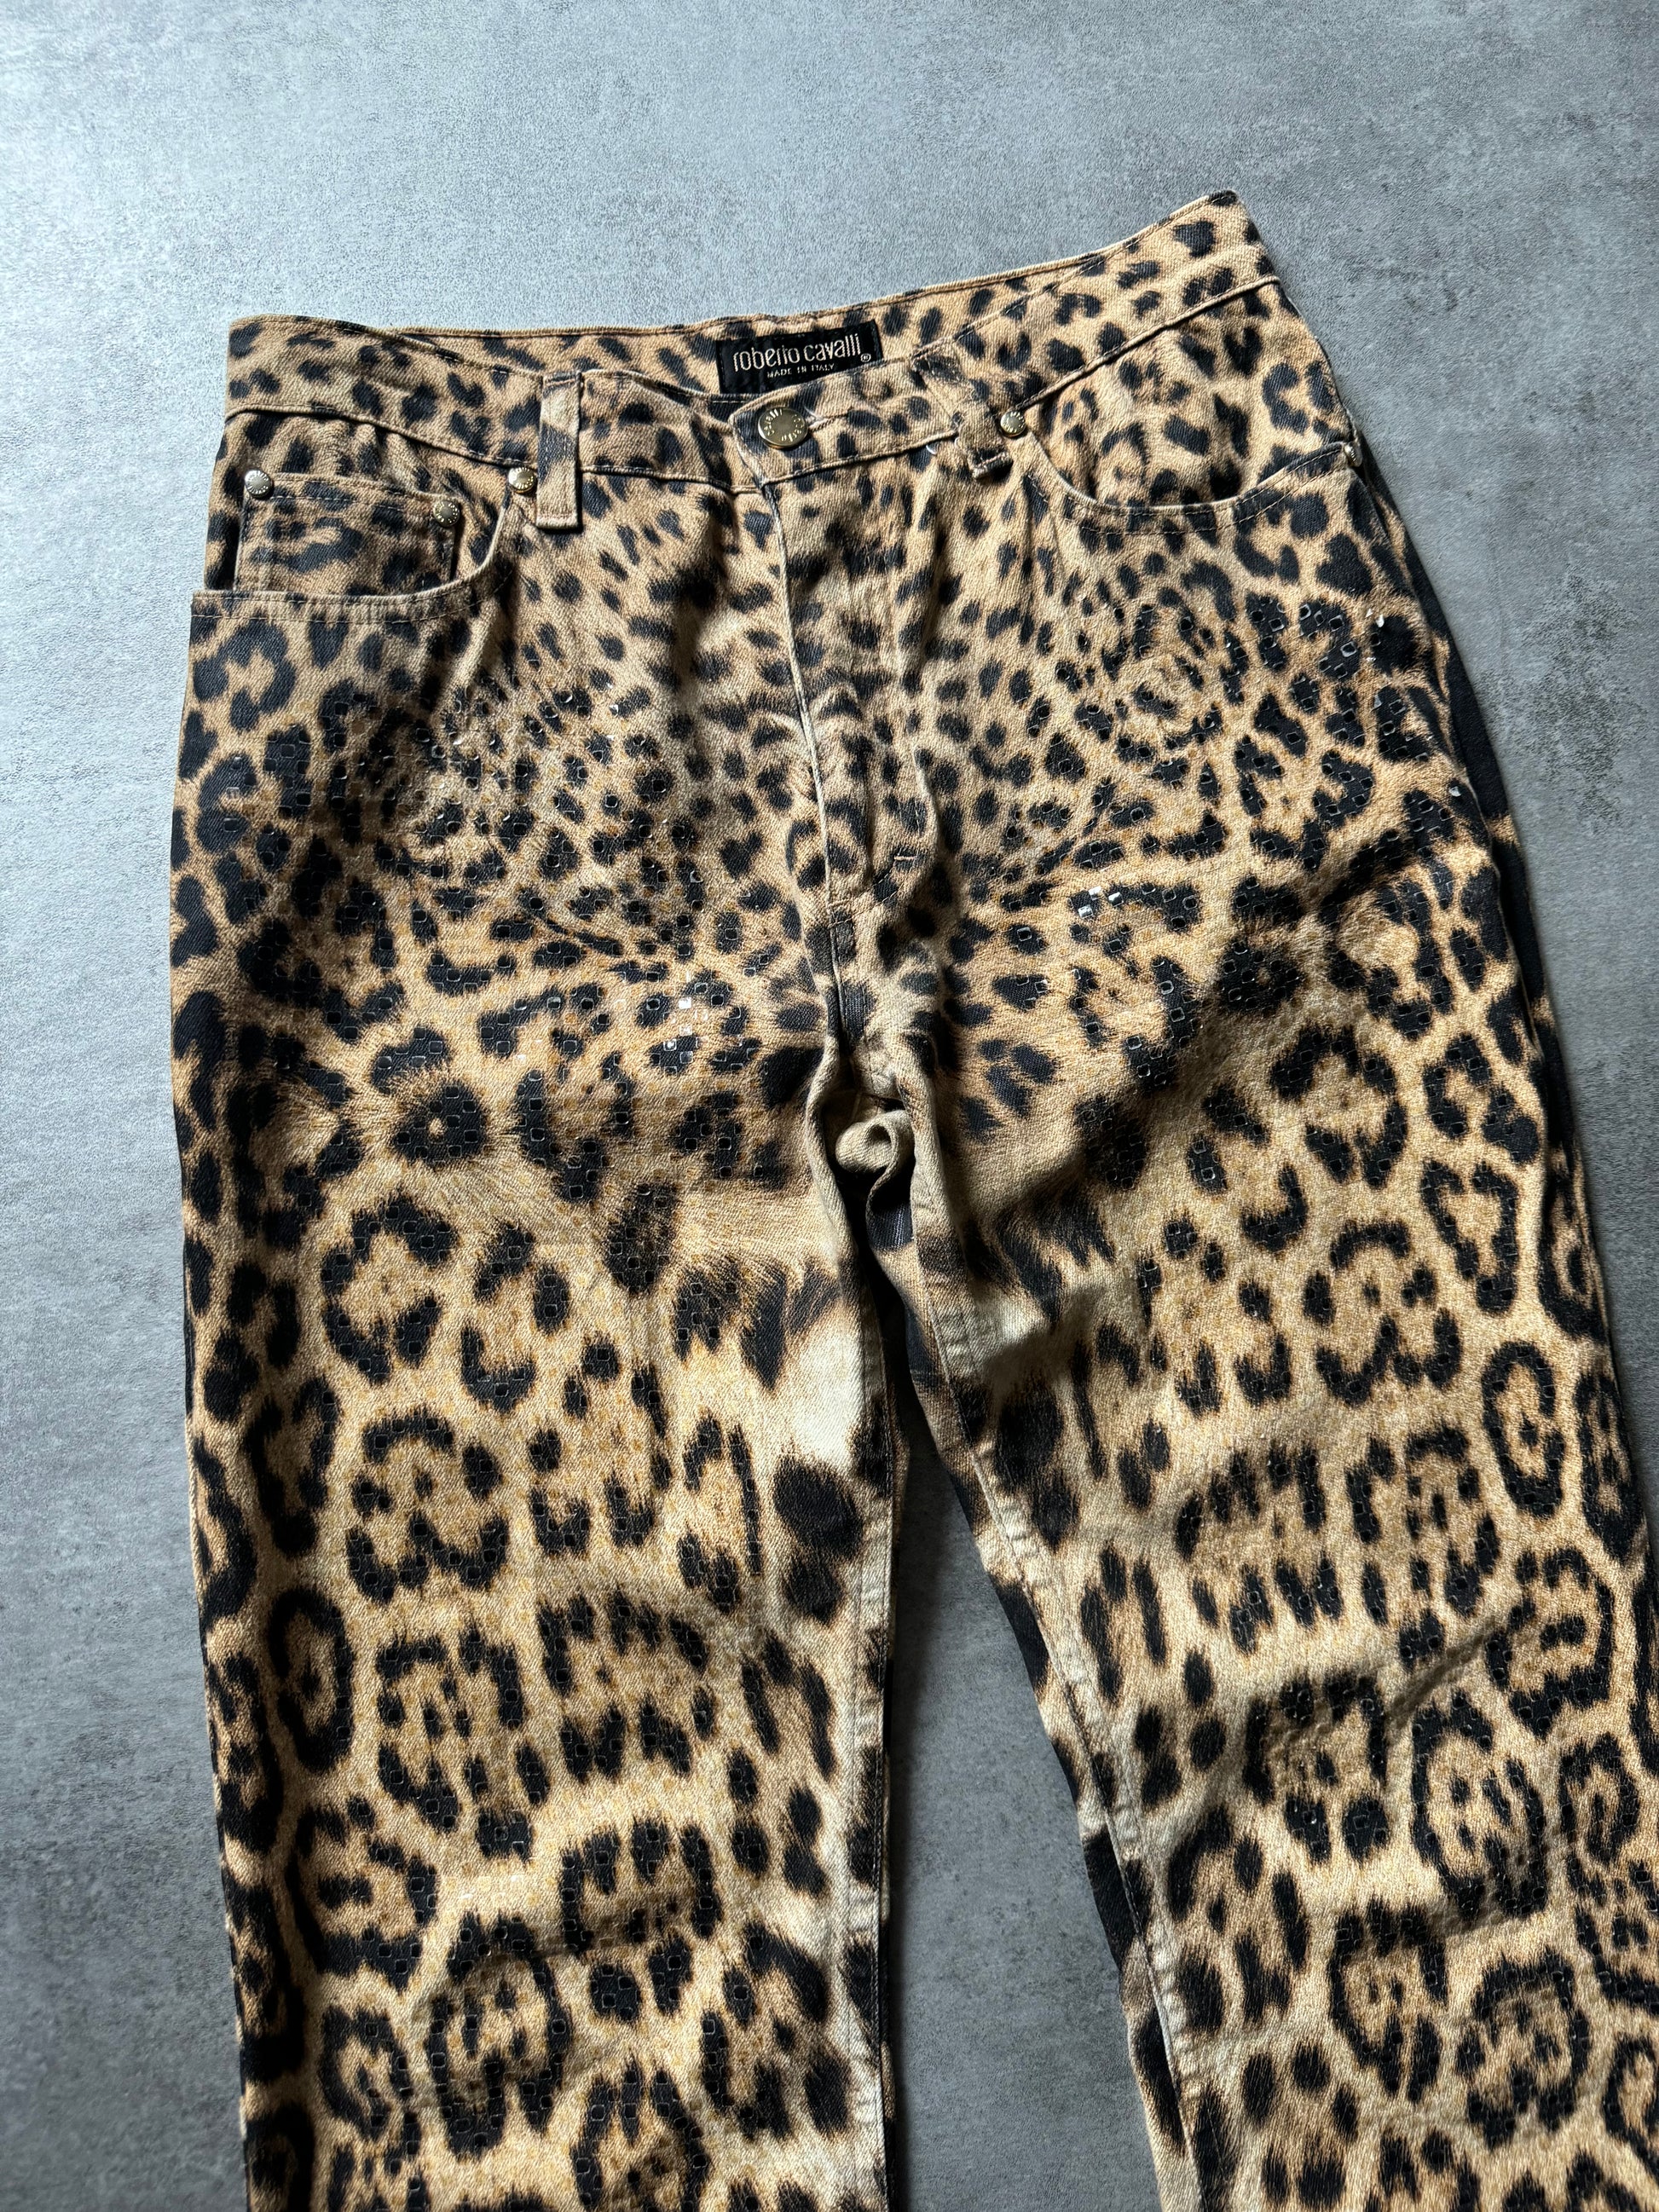 AW2000 Roberto Cavalli Jaguar Pants (S) - 8